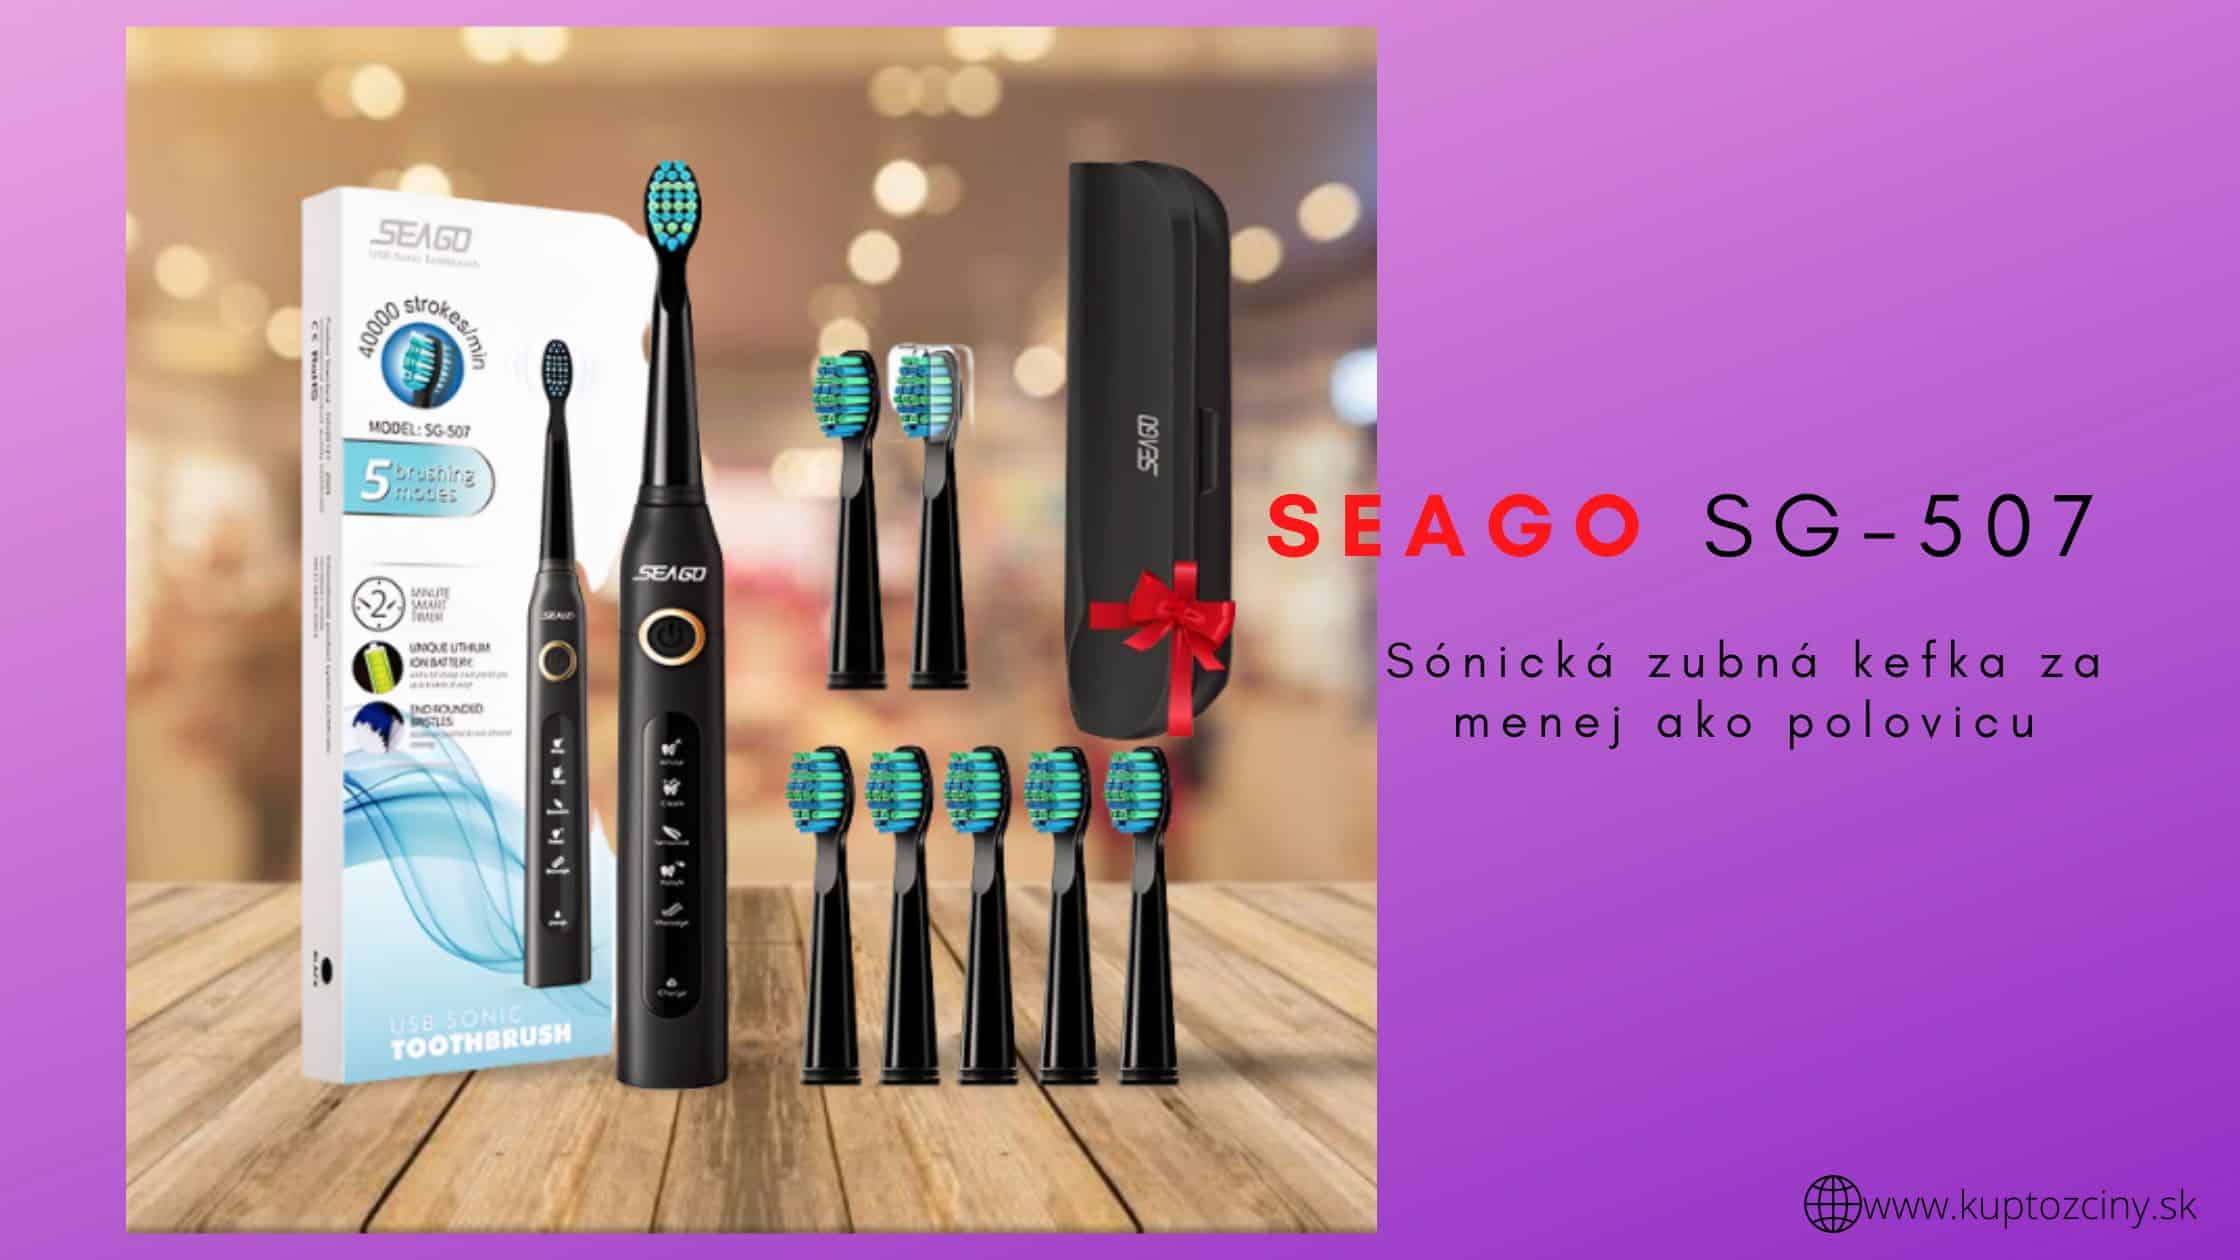 Nakupuj lacnejšie. Sónická zubná kefka Seago SG-507 za menej ako polovicu